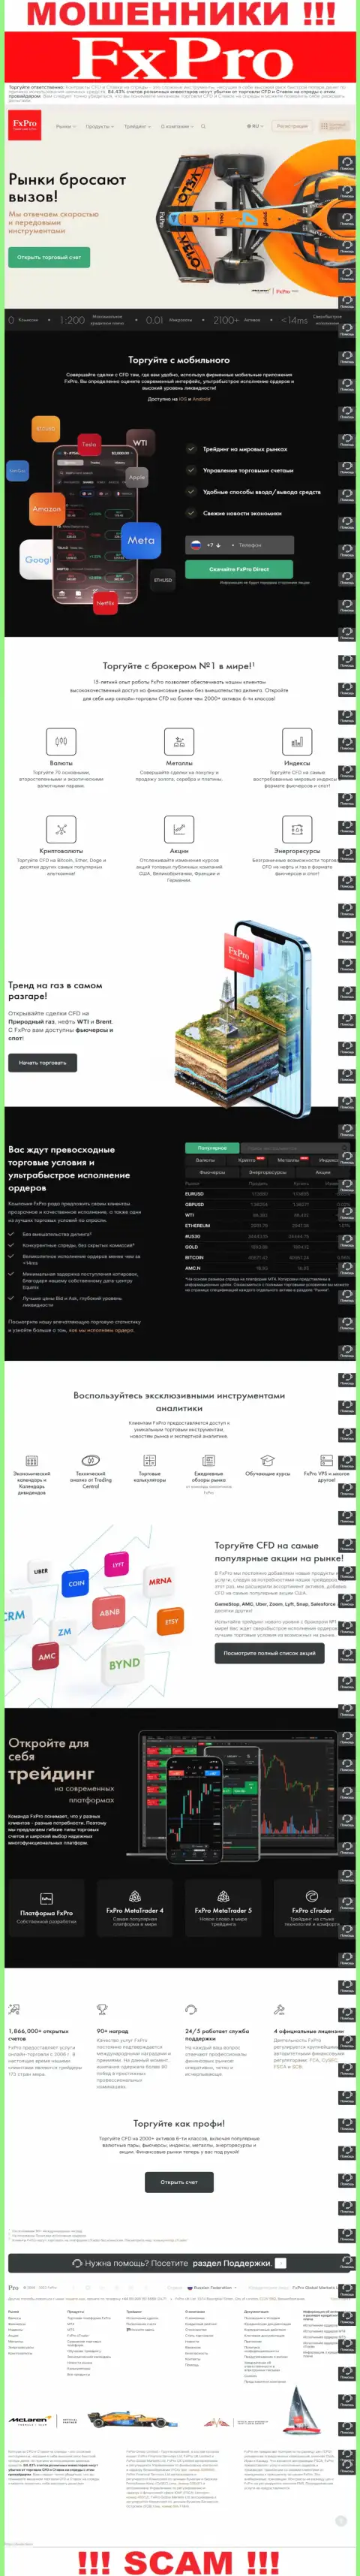 Капкан для лохов - официальный web-сервис мошенников Фикс Про